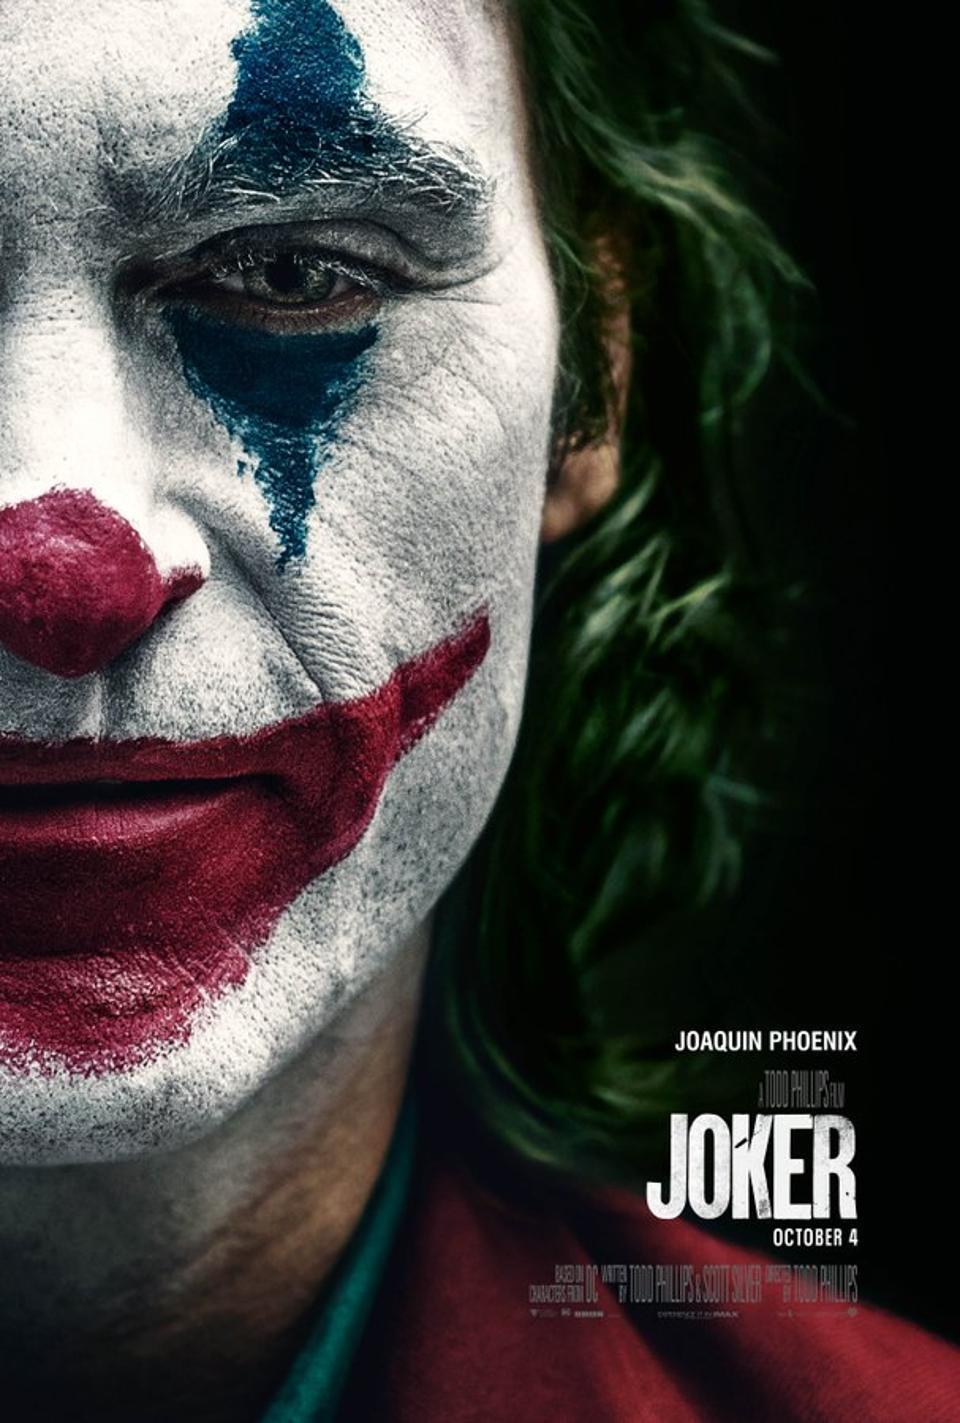 2 στους 10 ταυτίζονται με τον κεντρικό ήρωα του Joker και τις πράξεις του Εσείς, προσωπικά, ταυτίζεστε